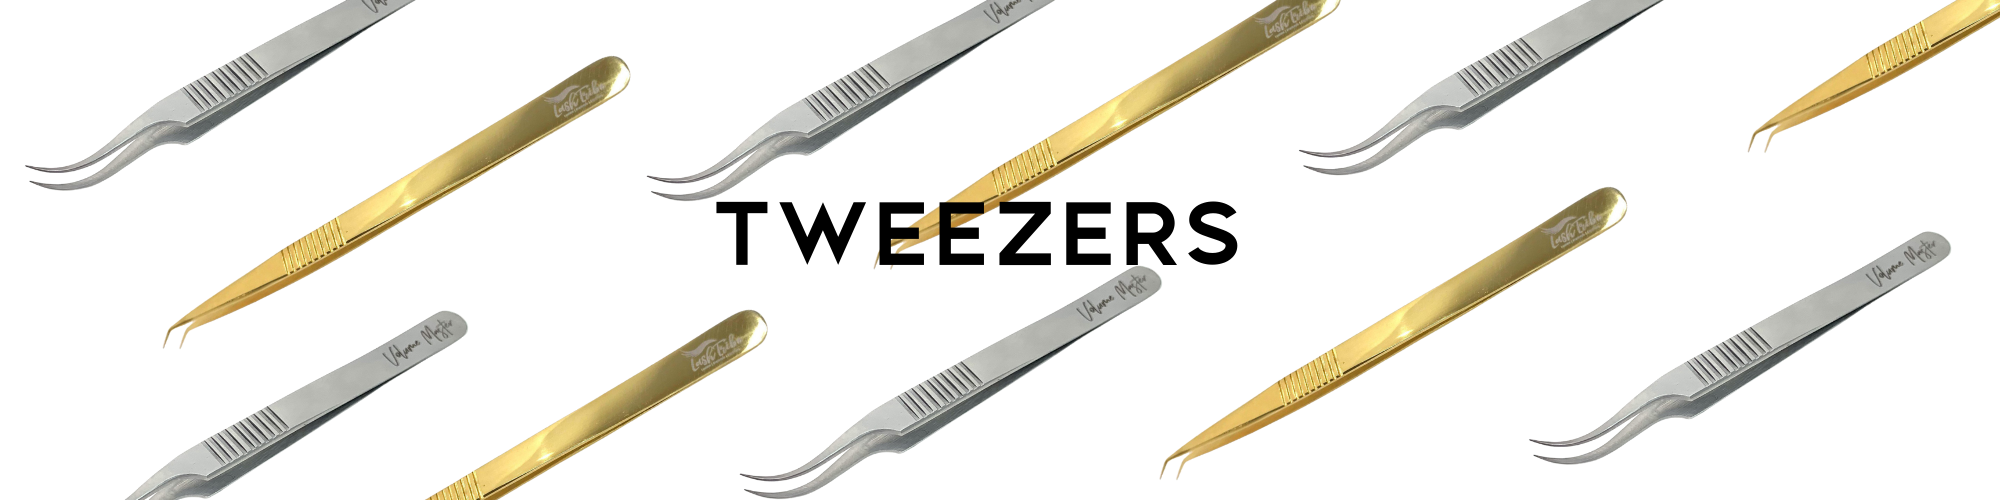 Tweezers tweezers tweezers tweezers tweezers tweezers.